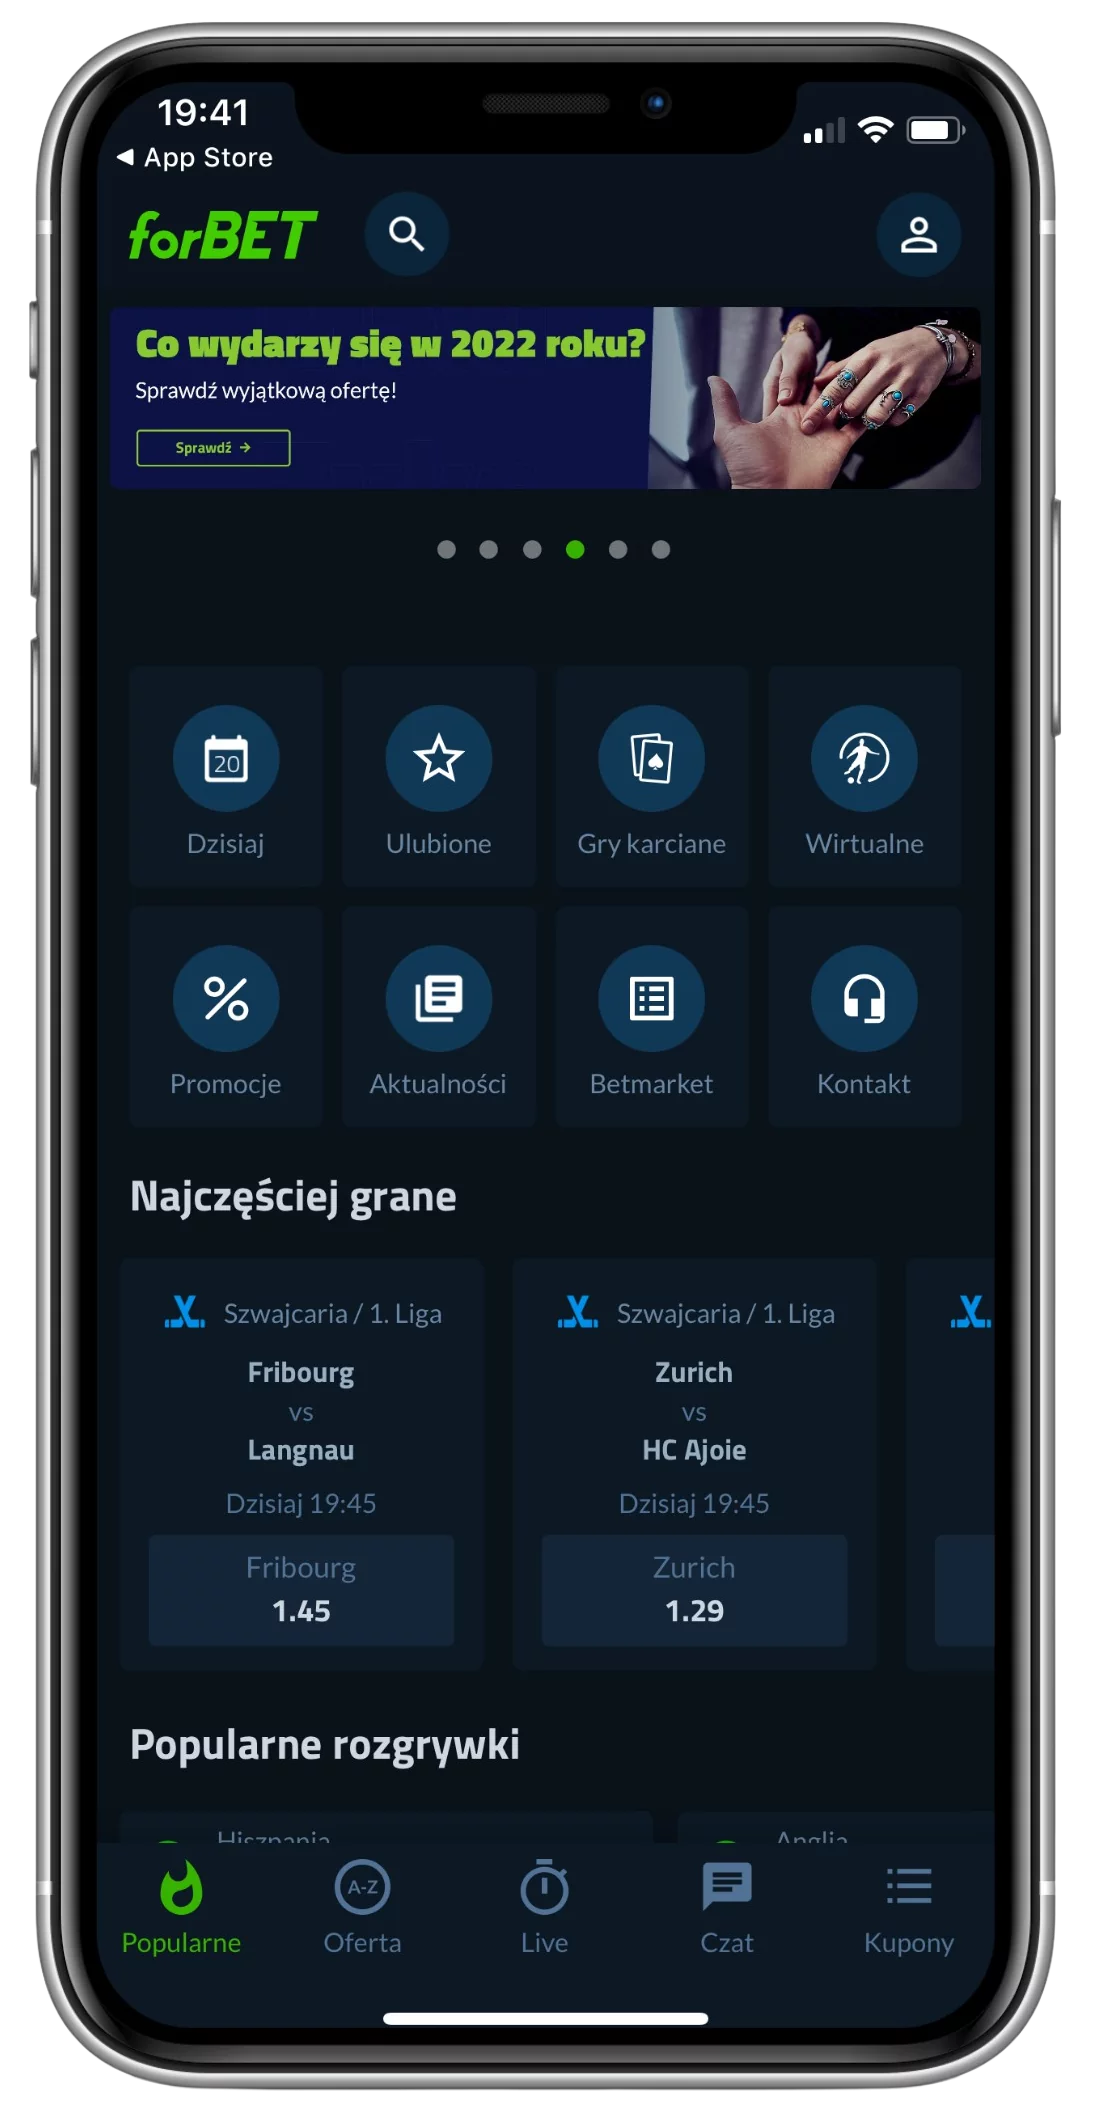 Strona główna aplikacji mobilnej Forbet dla IOS